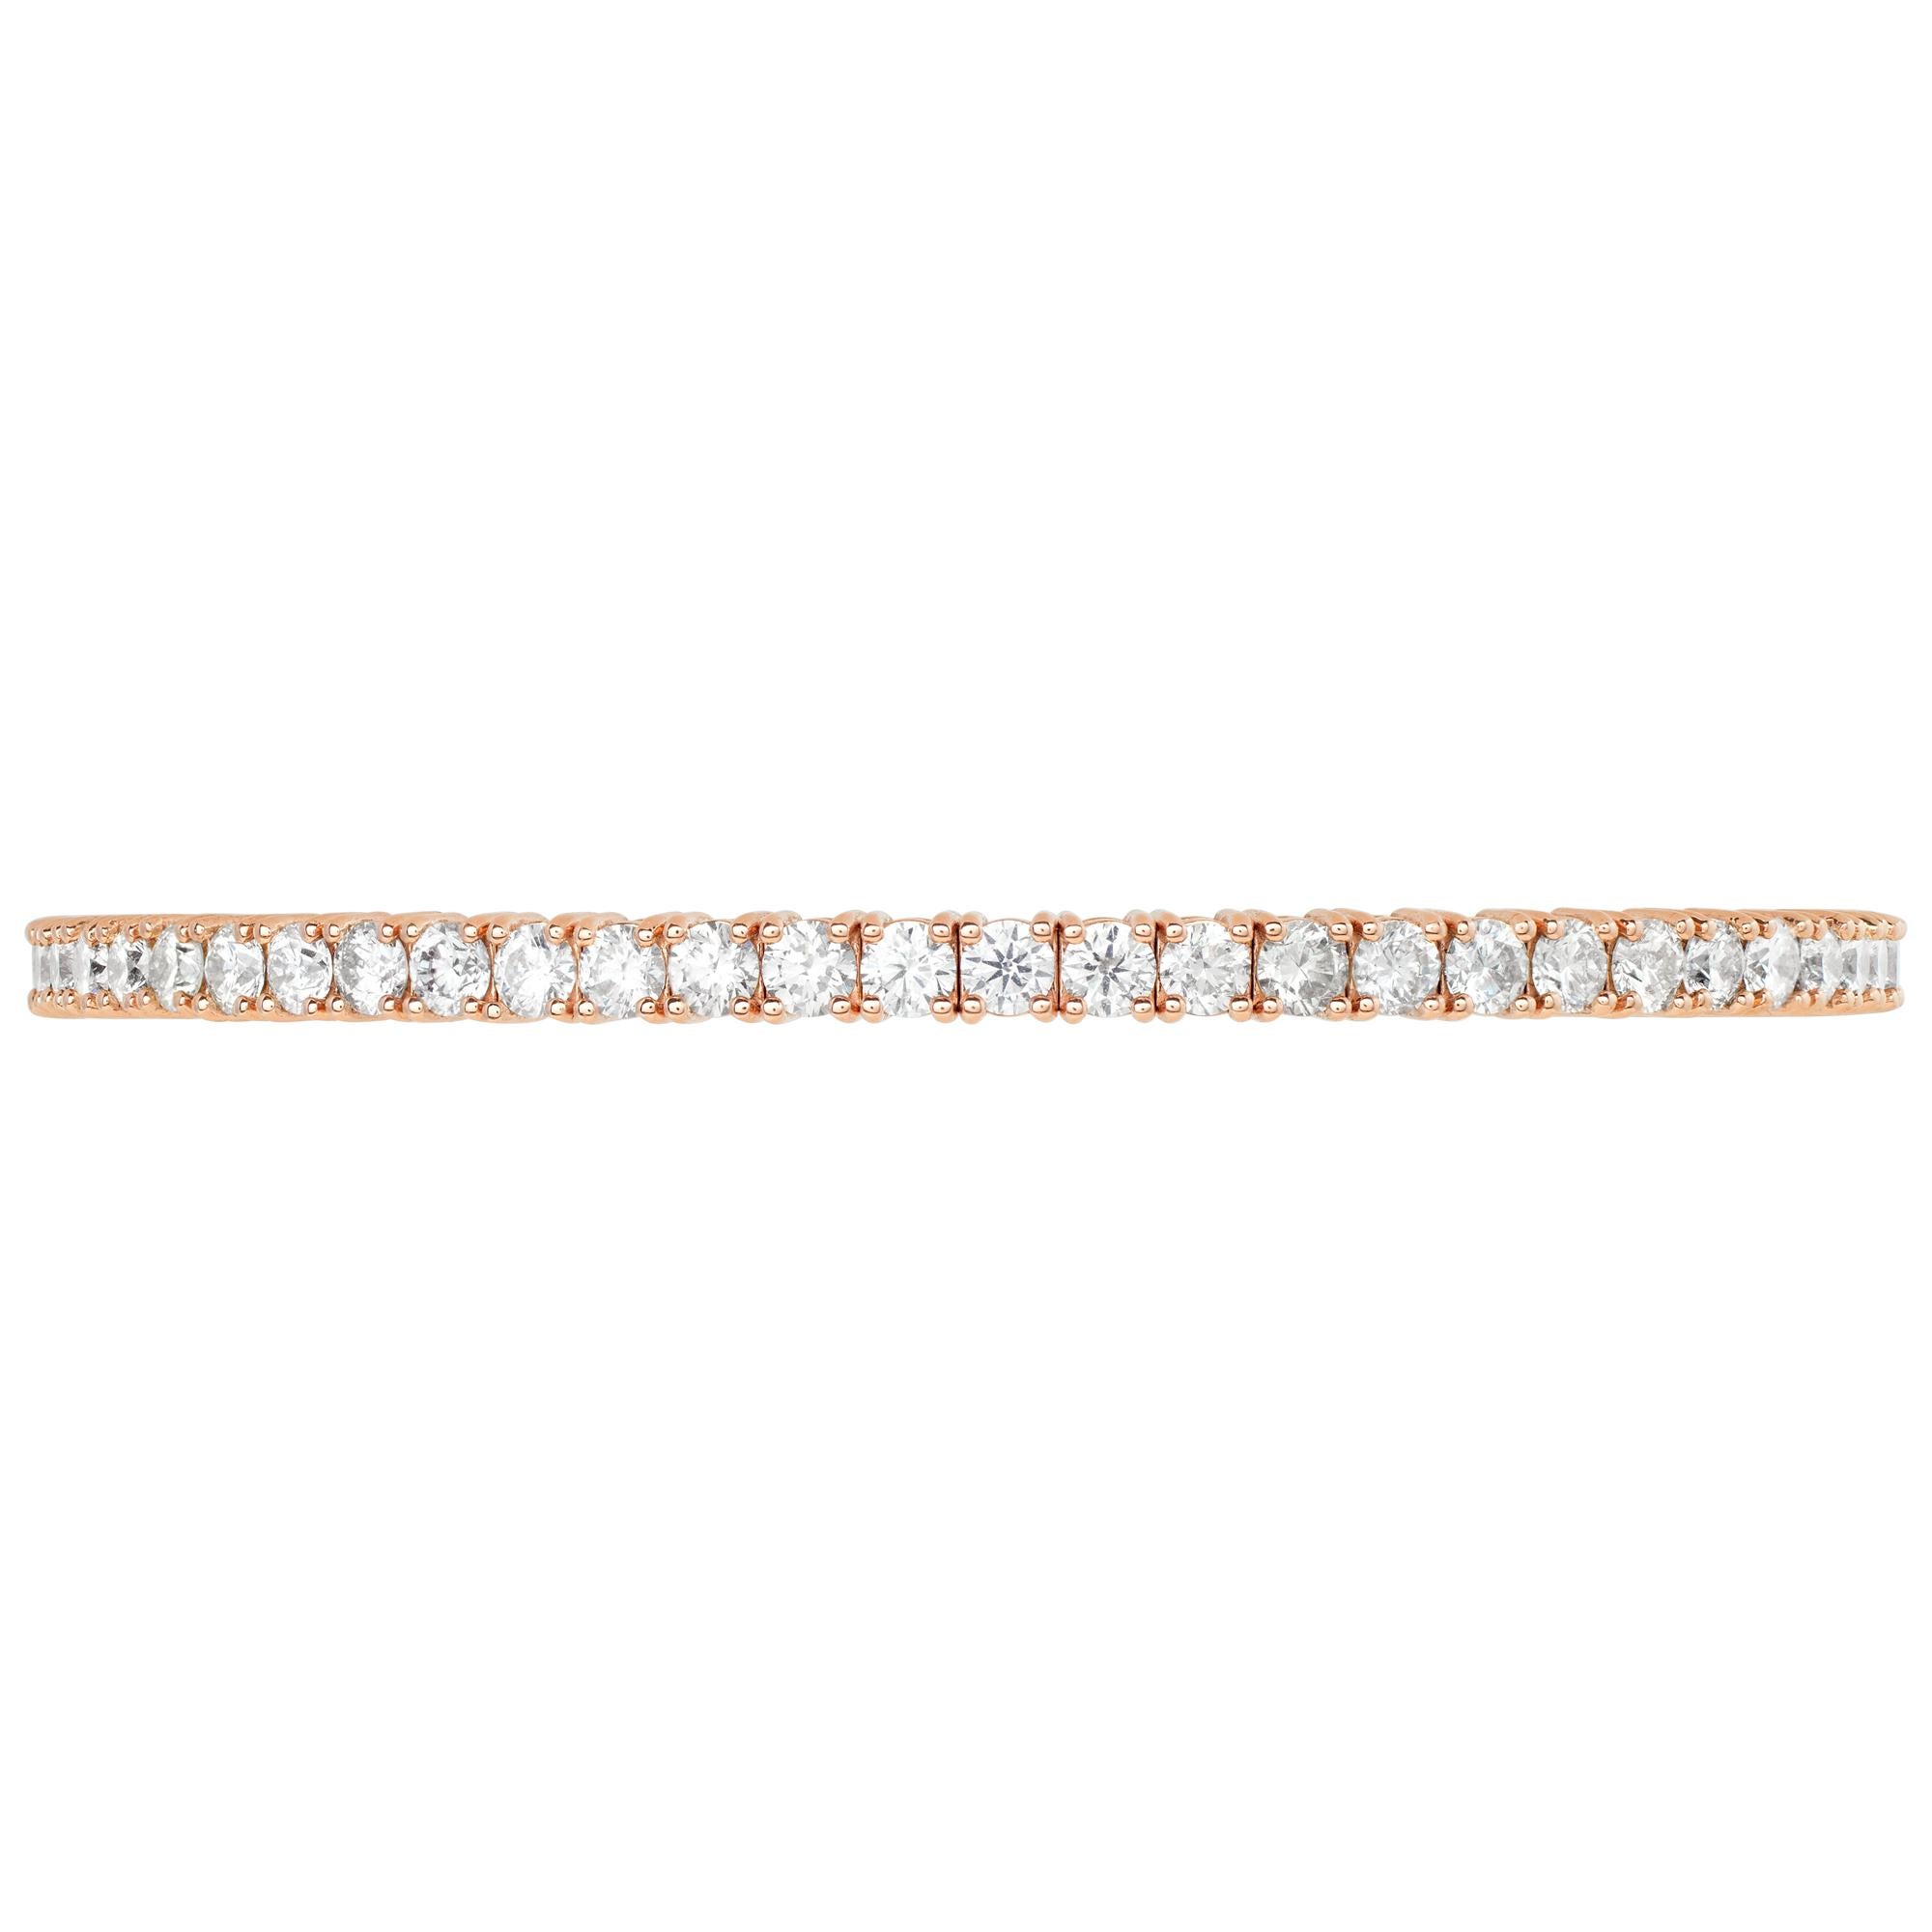 Bracelet flexible à lignes de diamants  en or rose 14k avec environ 6,25 carats de diamants ronds (couleur H-I, pureté SI). Largeur de 3,5 mm.